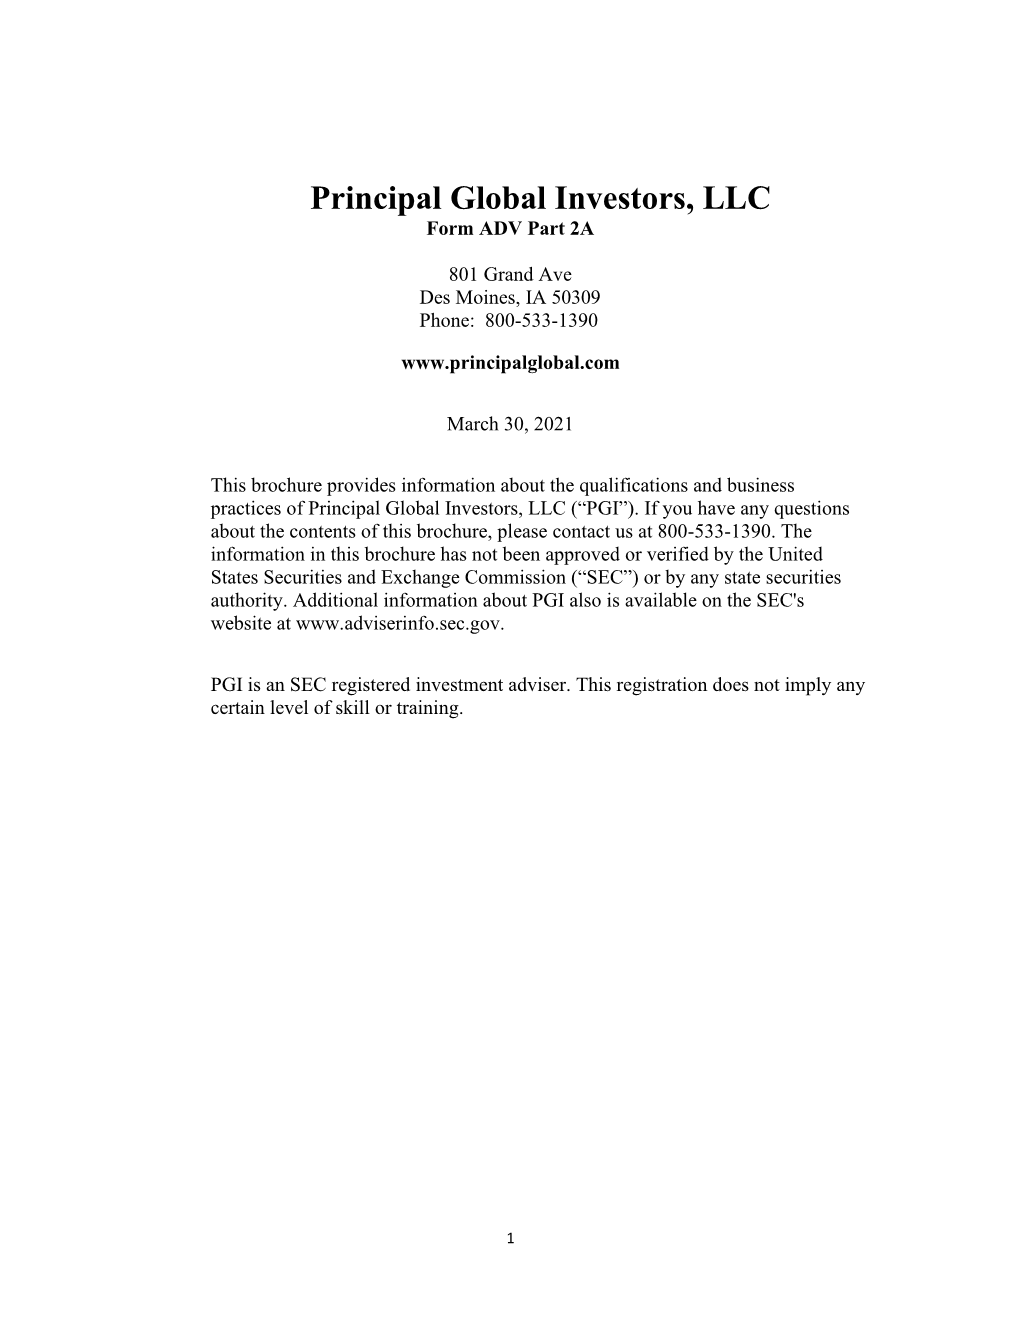 Principal Global Investors, LLC Form ADV Part 2A